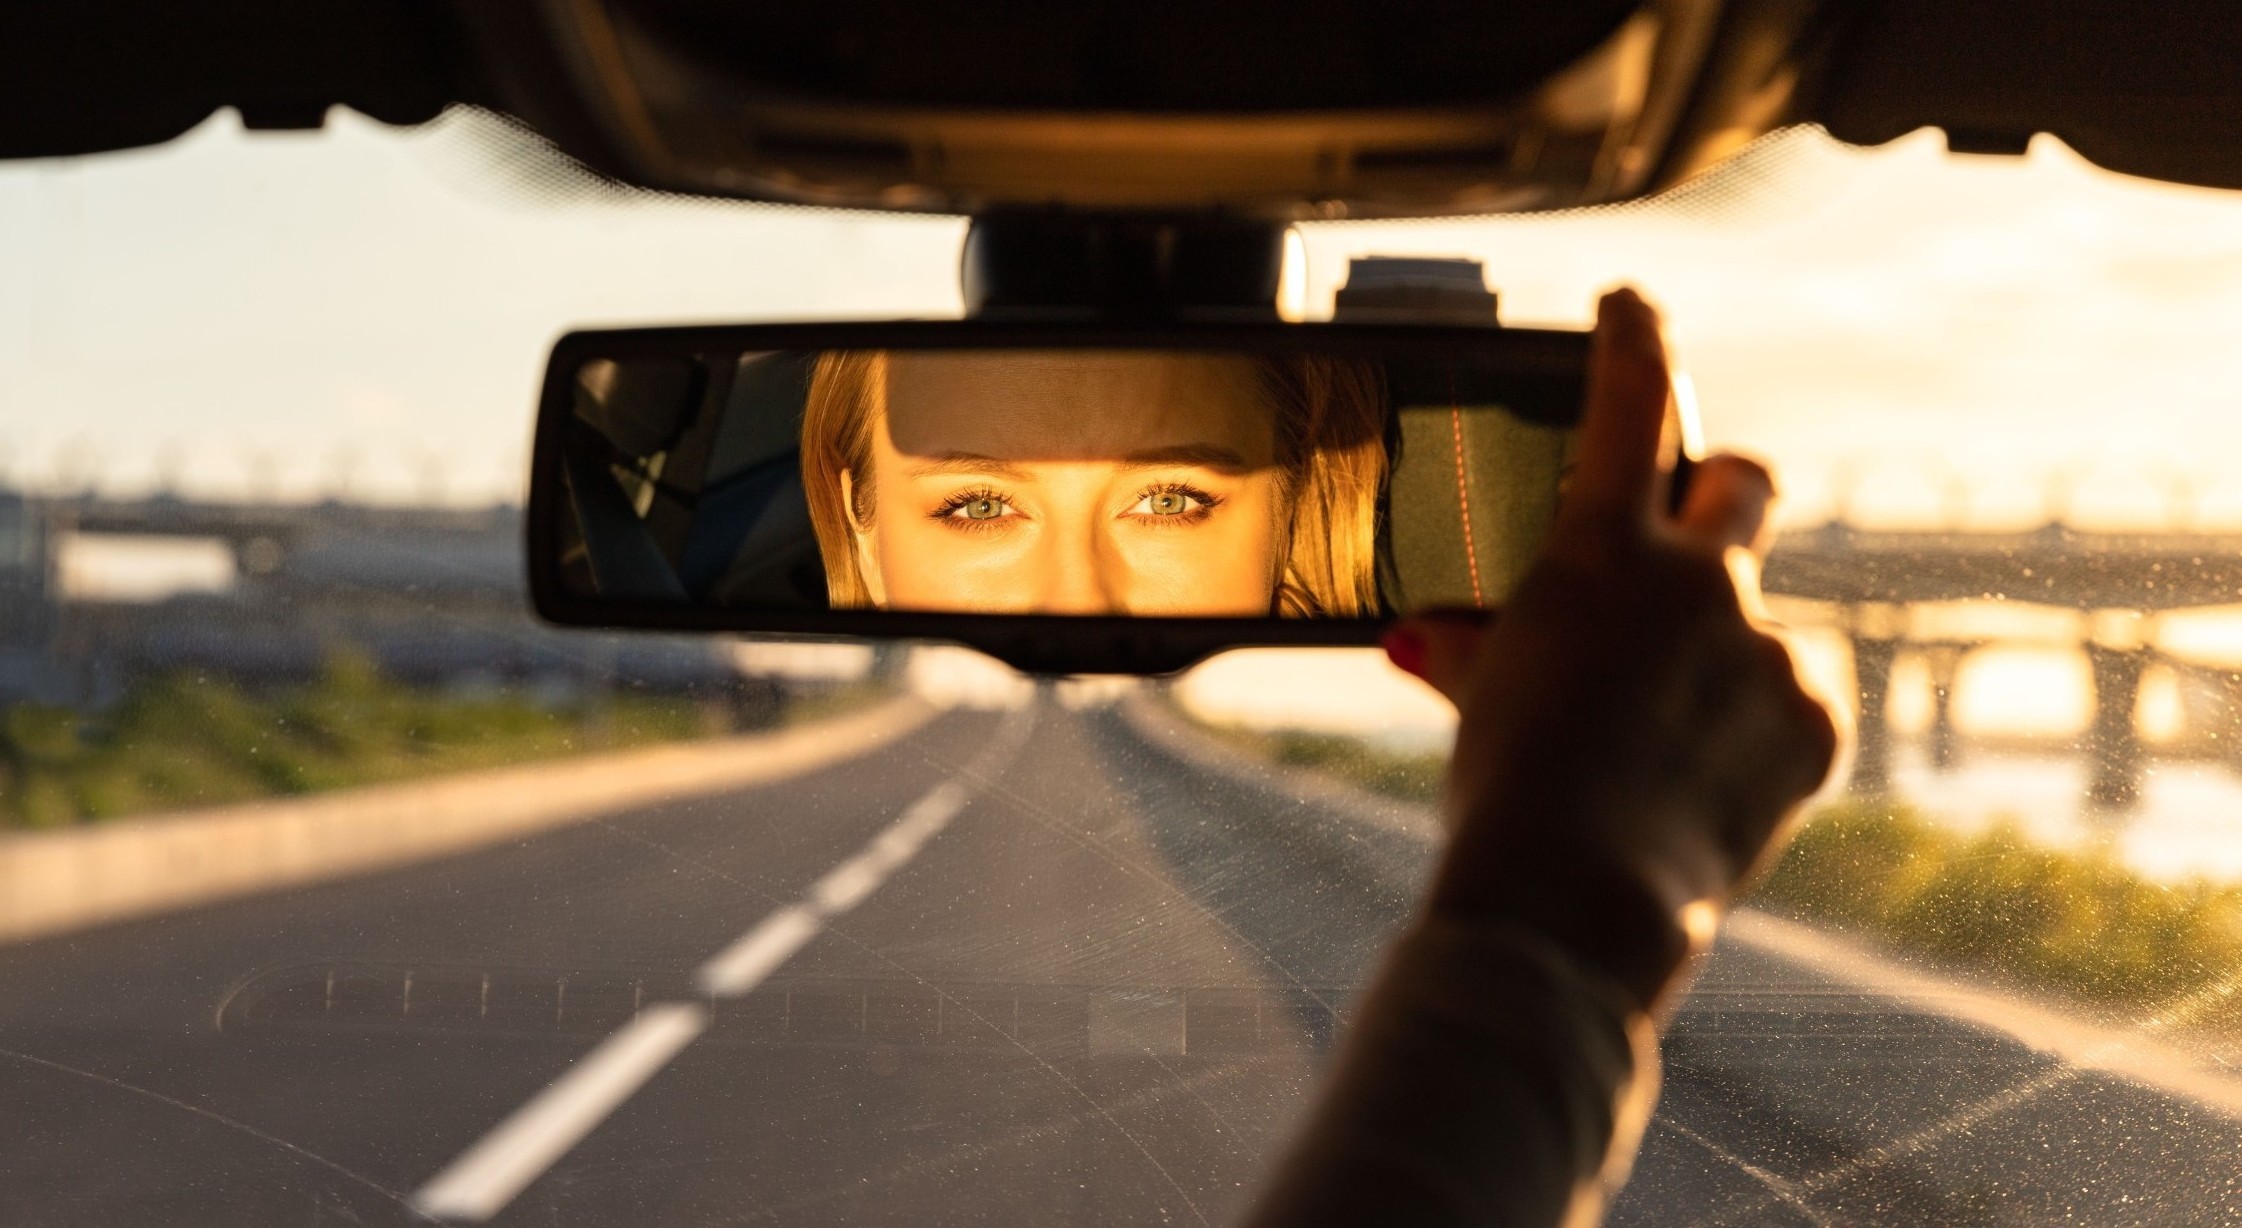 Viaggiare in sicurezza e comodamente con lo specchietto retrovisore.